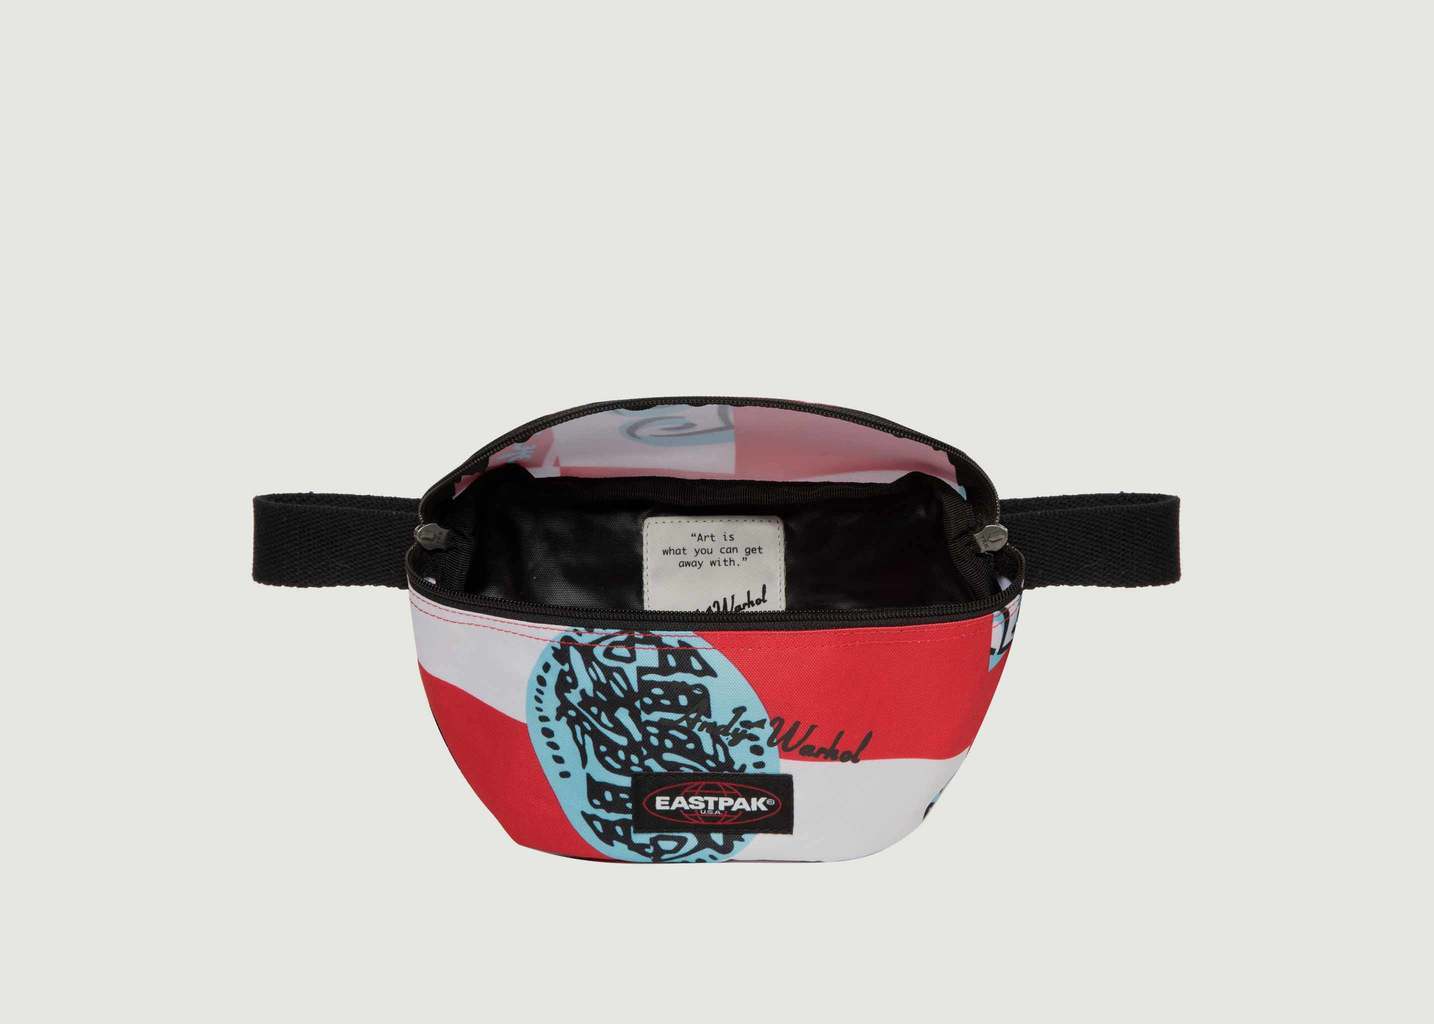 Springer Andy Warhol Belt Bag - Eastpak